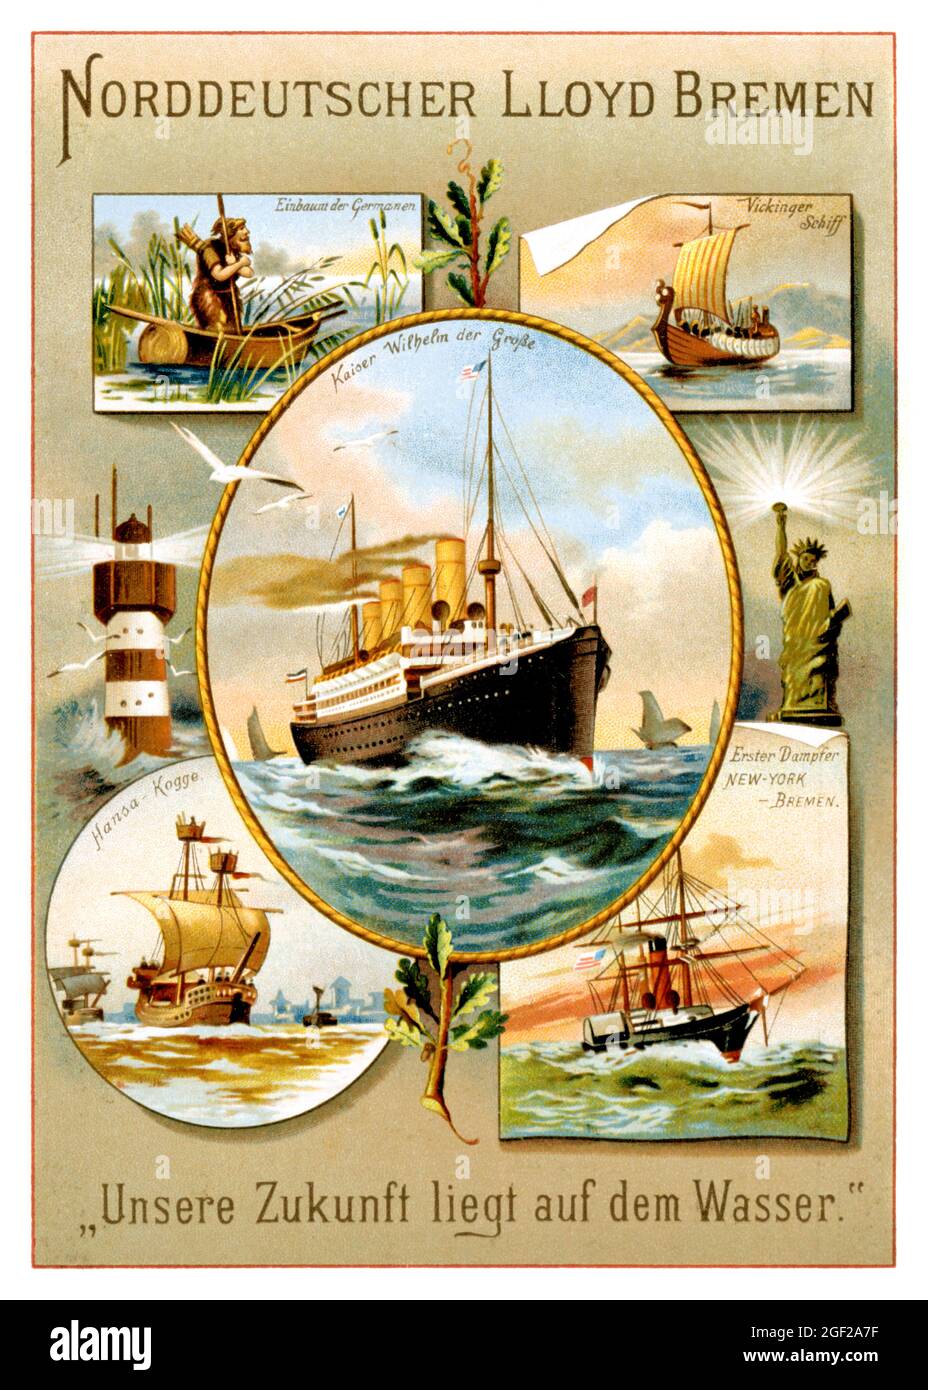 Norddeutscher Lloyd Bremen. Unsere Zukunft liegt auf dem Wasser. Artist unknown. Restored vintage poster published in 1897 in Germany. Stock Photo